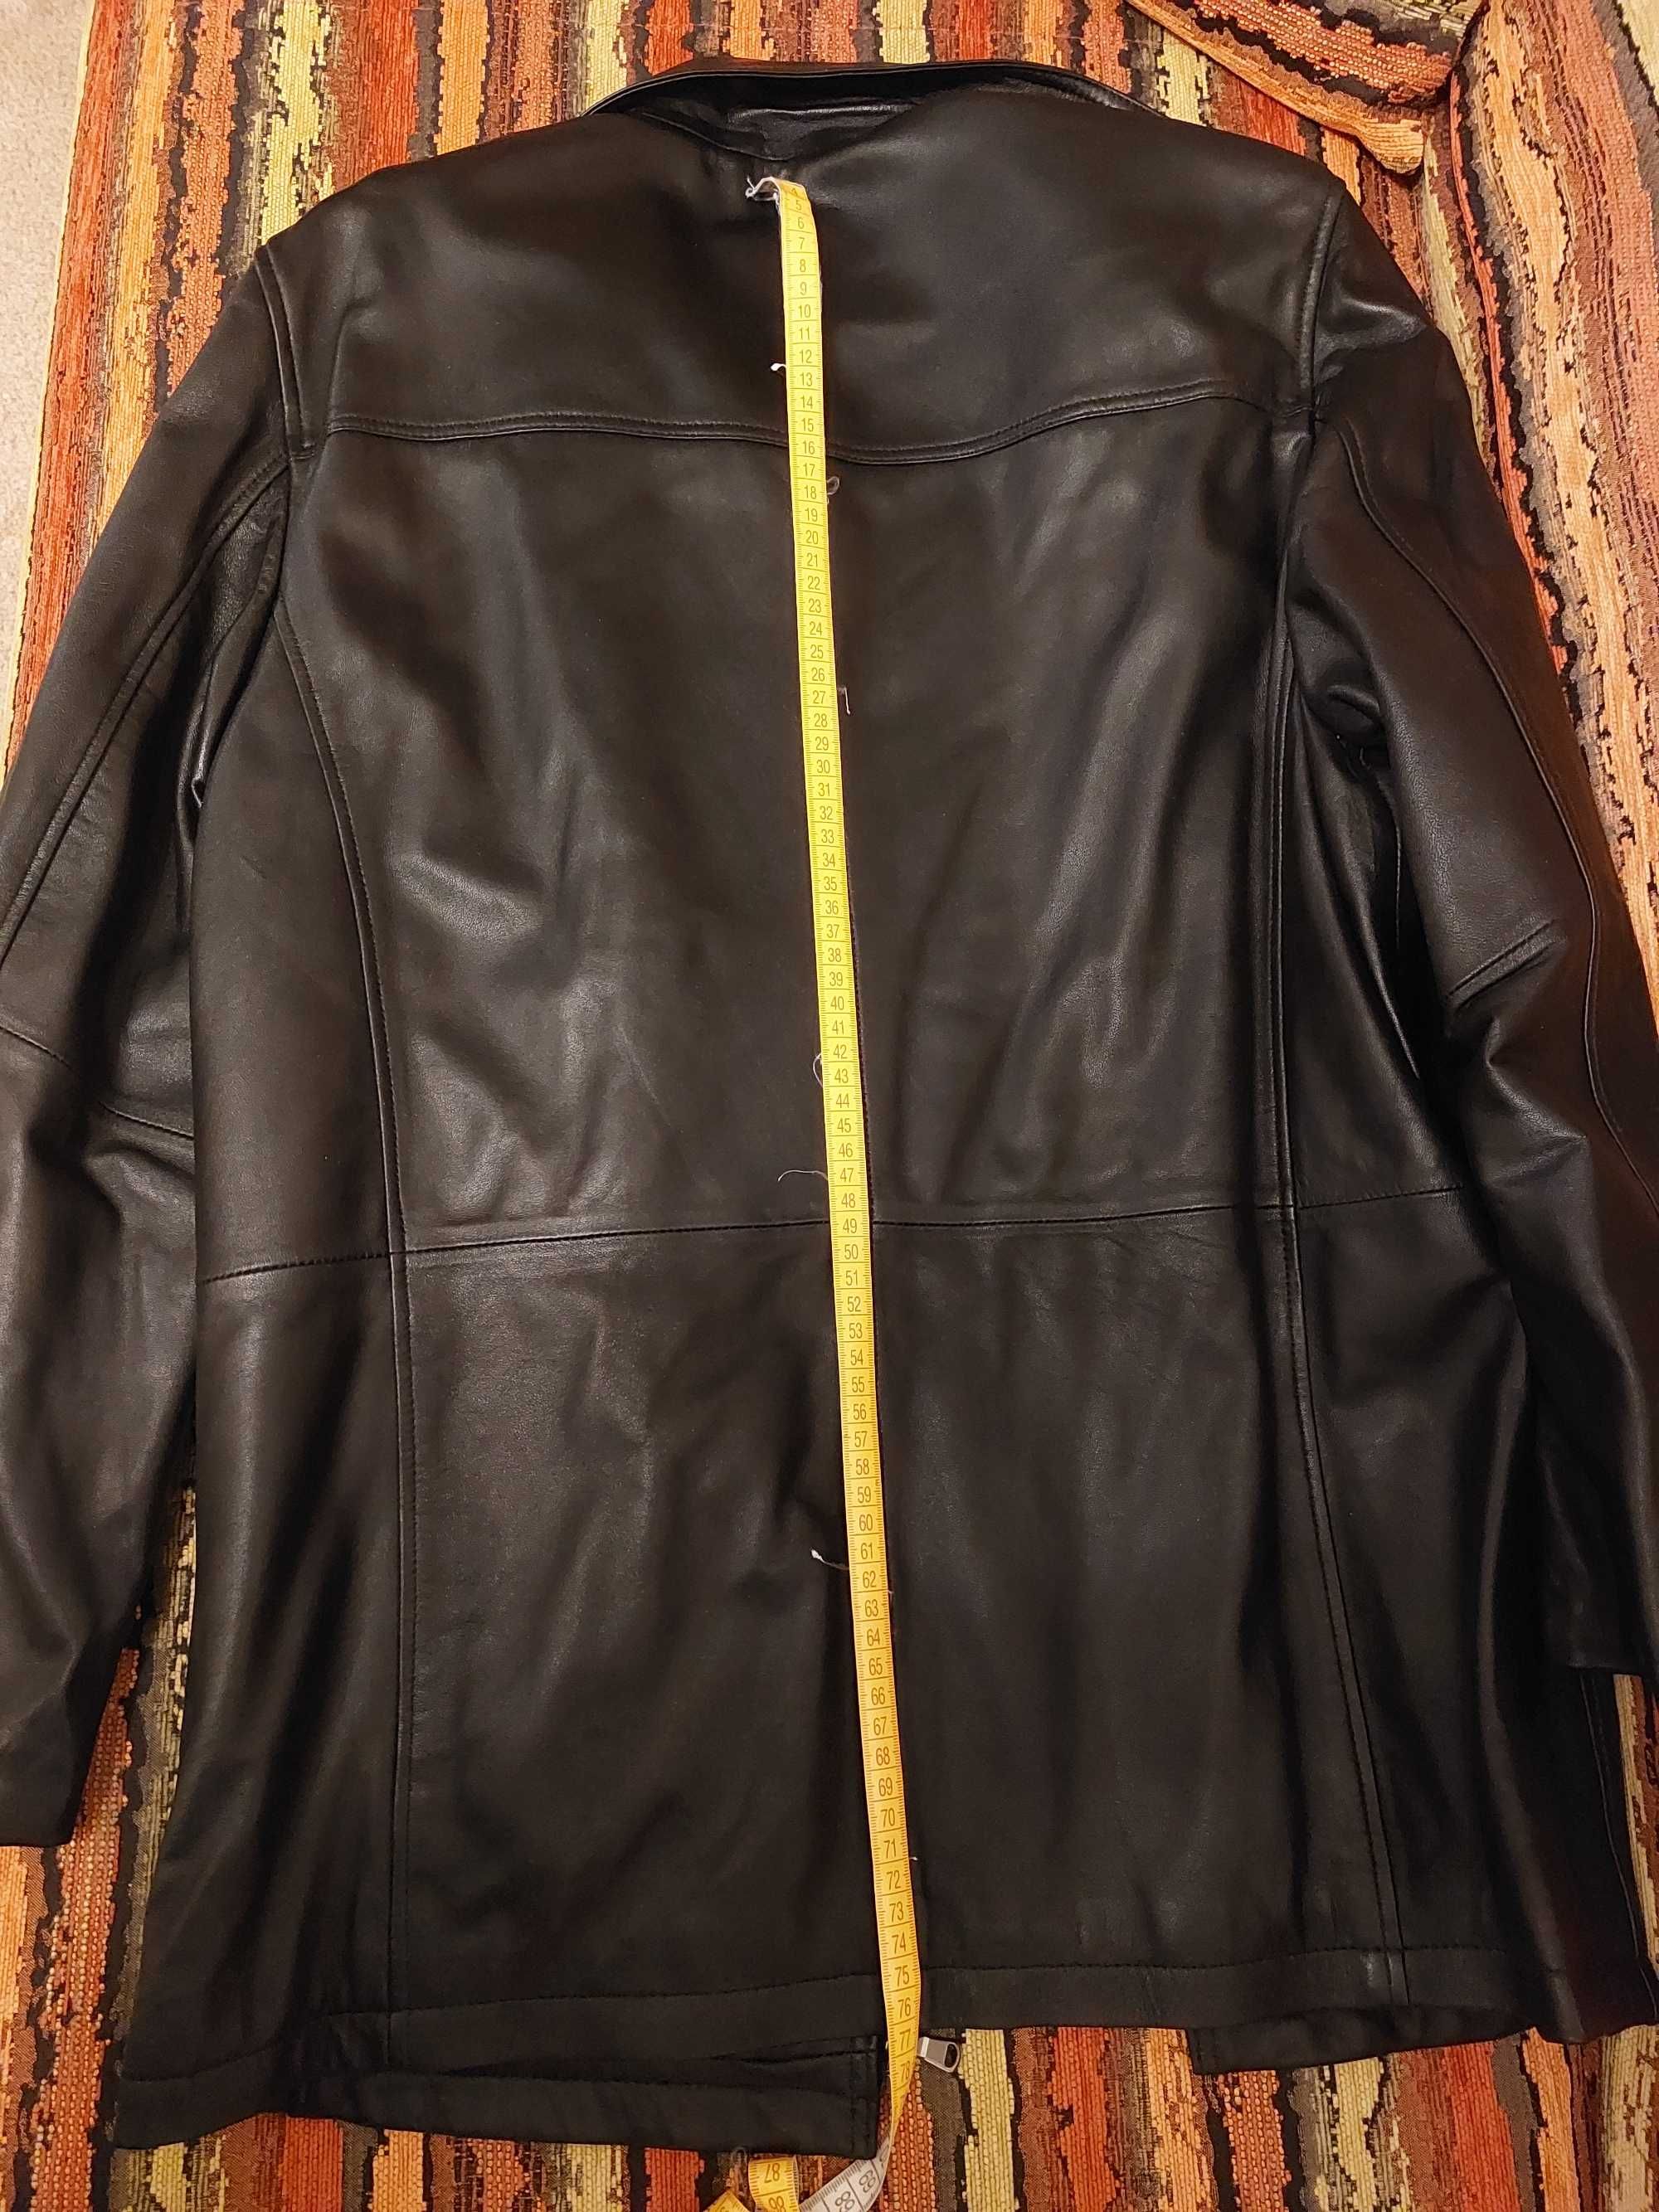 Кожаная мужская куртка, размер M, в идеальном состоянии. Турция.